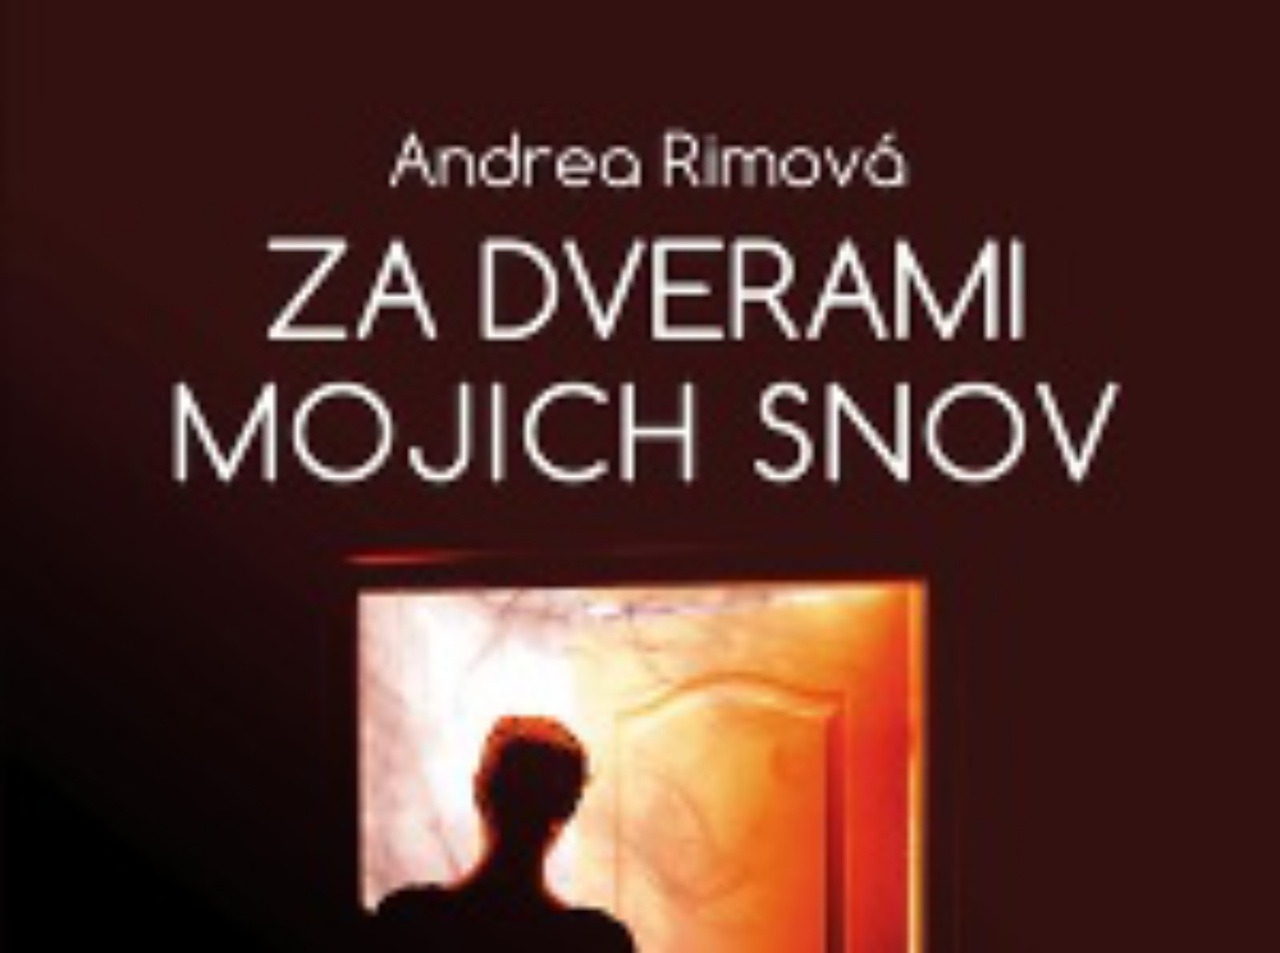 Andrea Rimová - Za dverami mojich snov